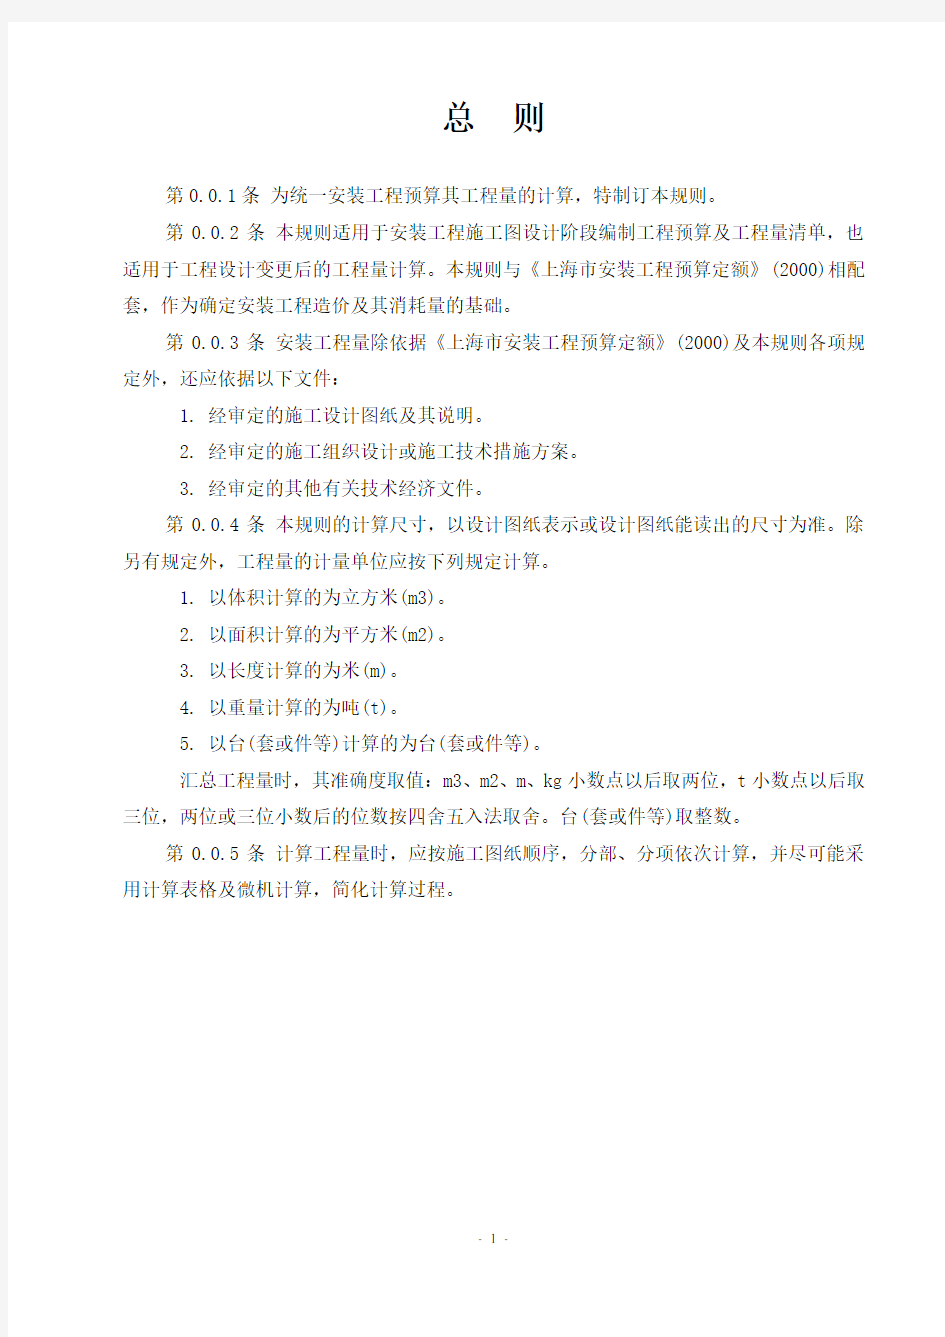 (完整版)上海市安装工程预算定额(2000)工程量计算规则